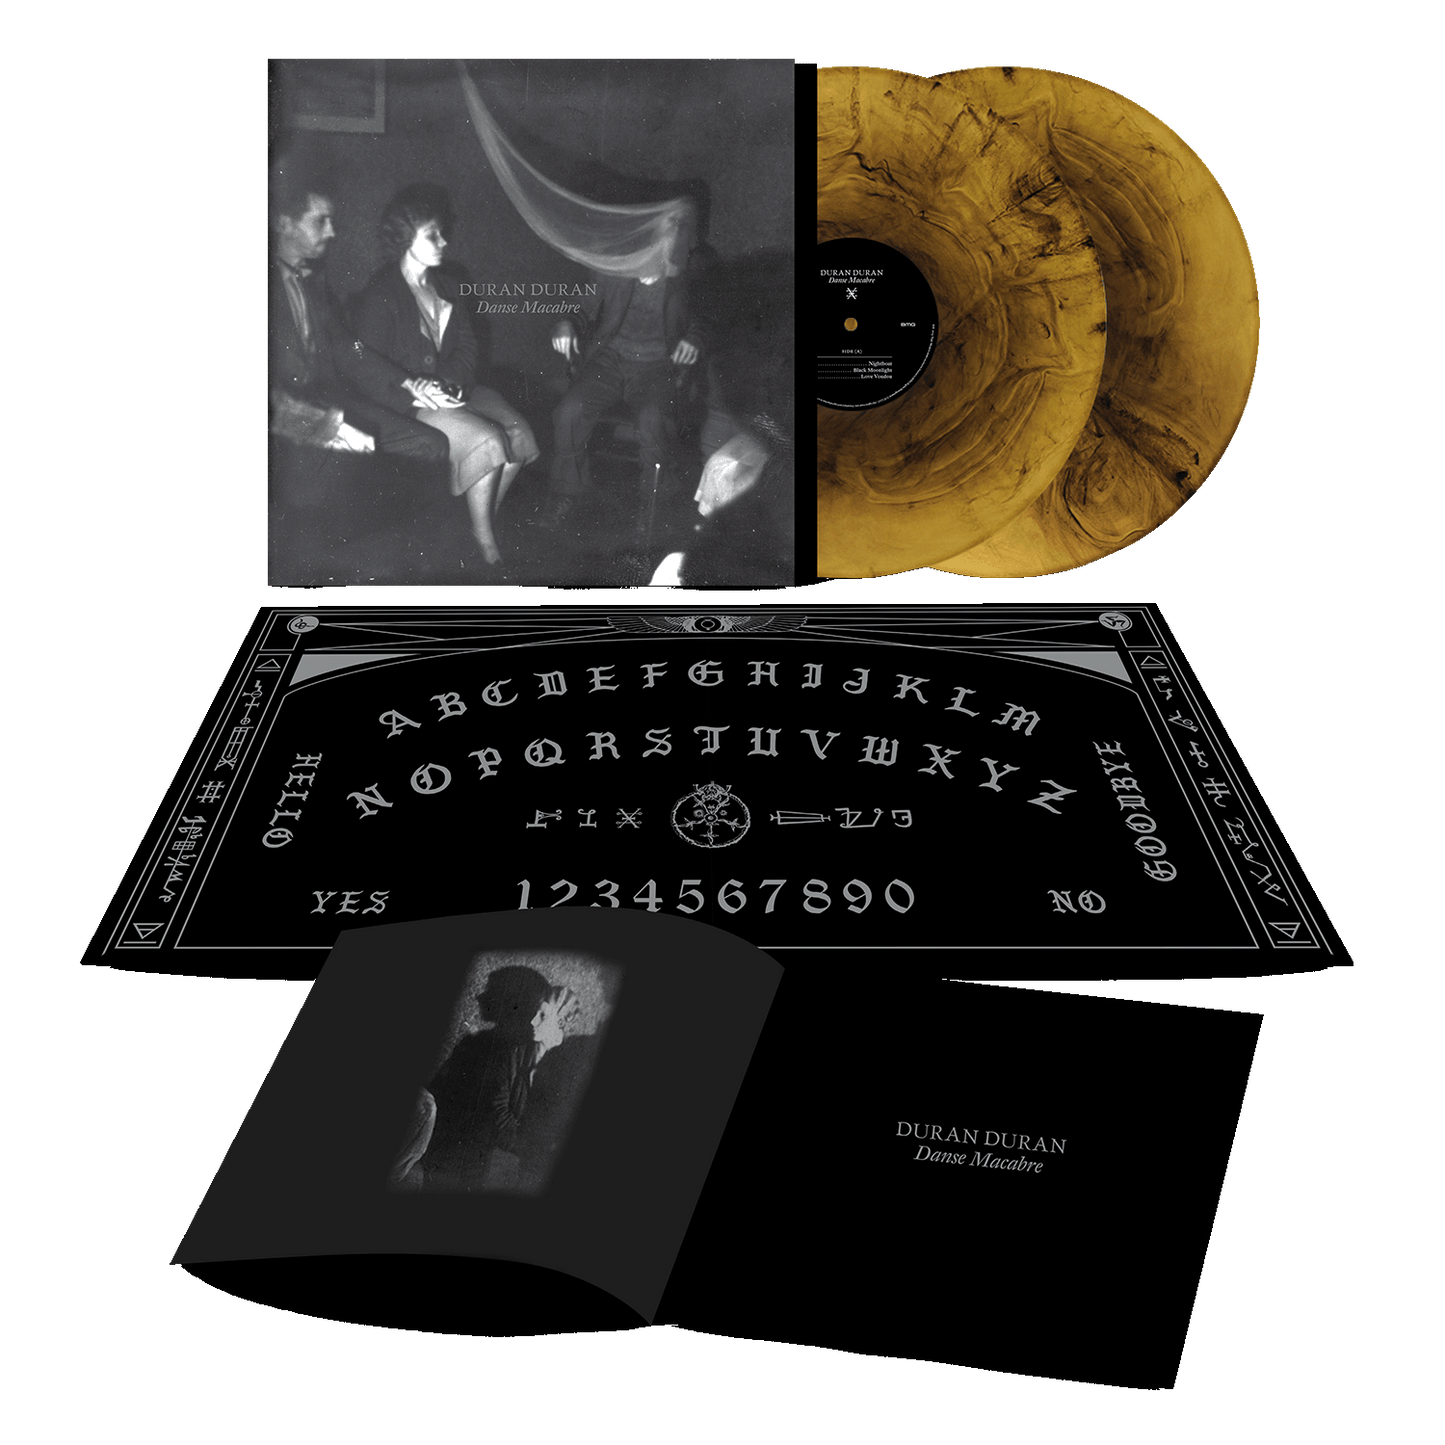 DANSE MACABRE – Translucent Galaxy Vinyl